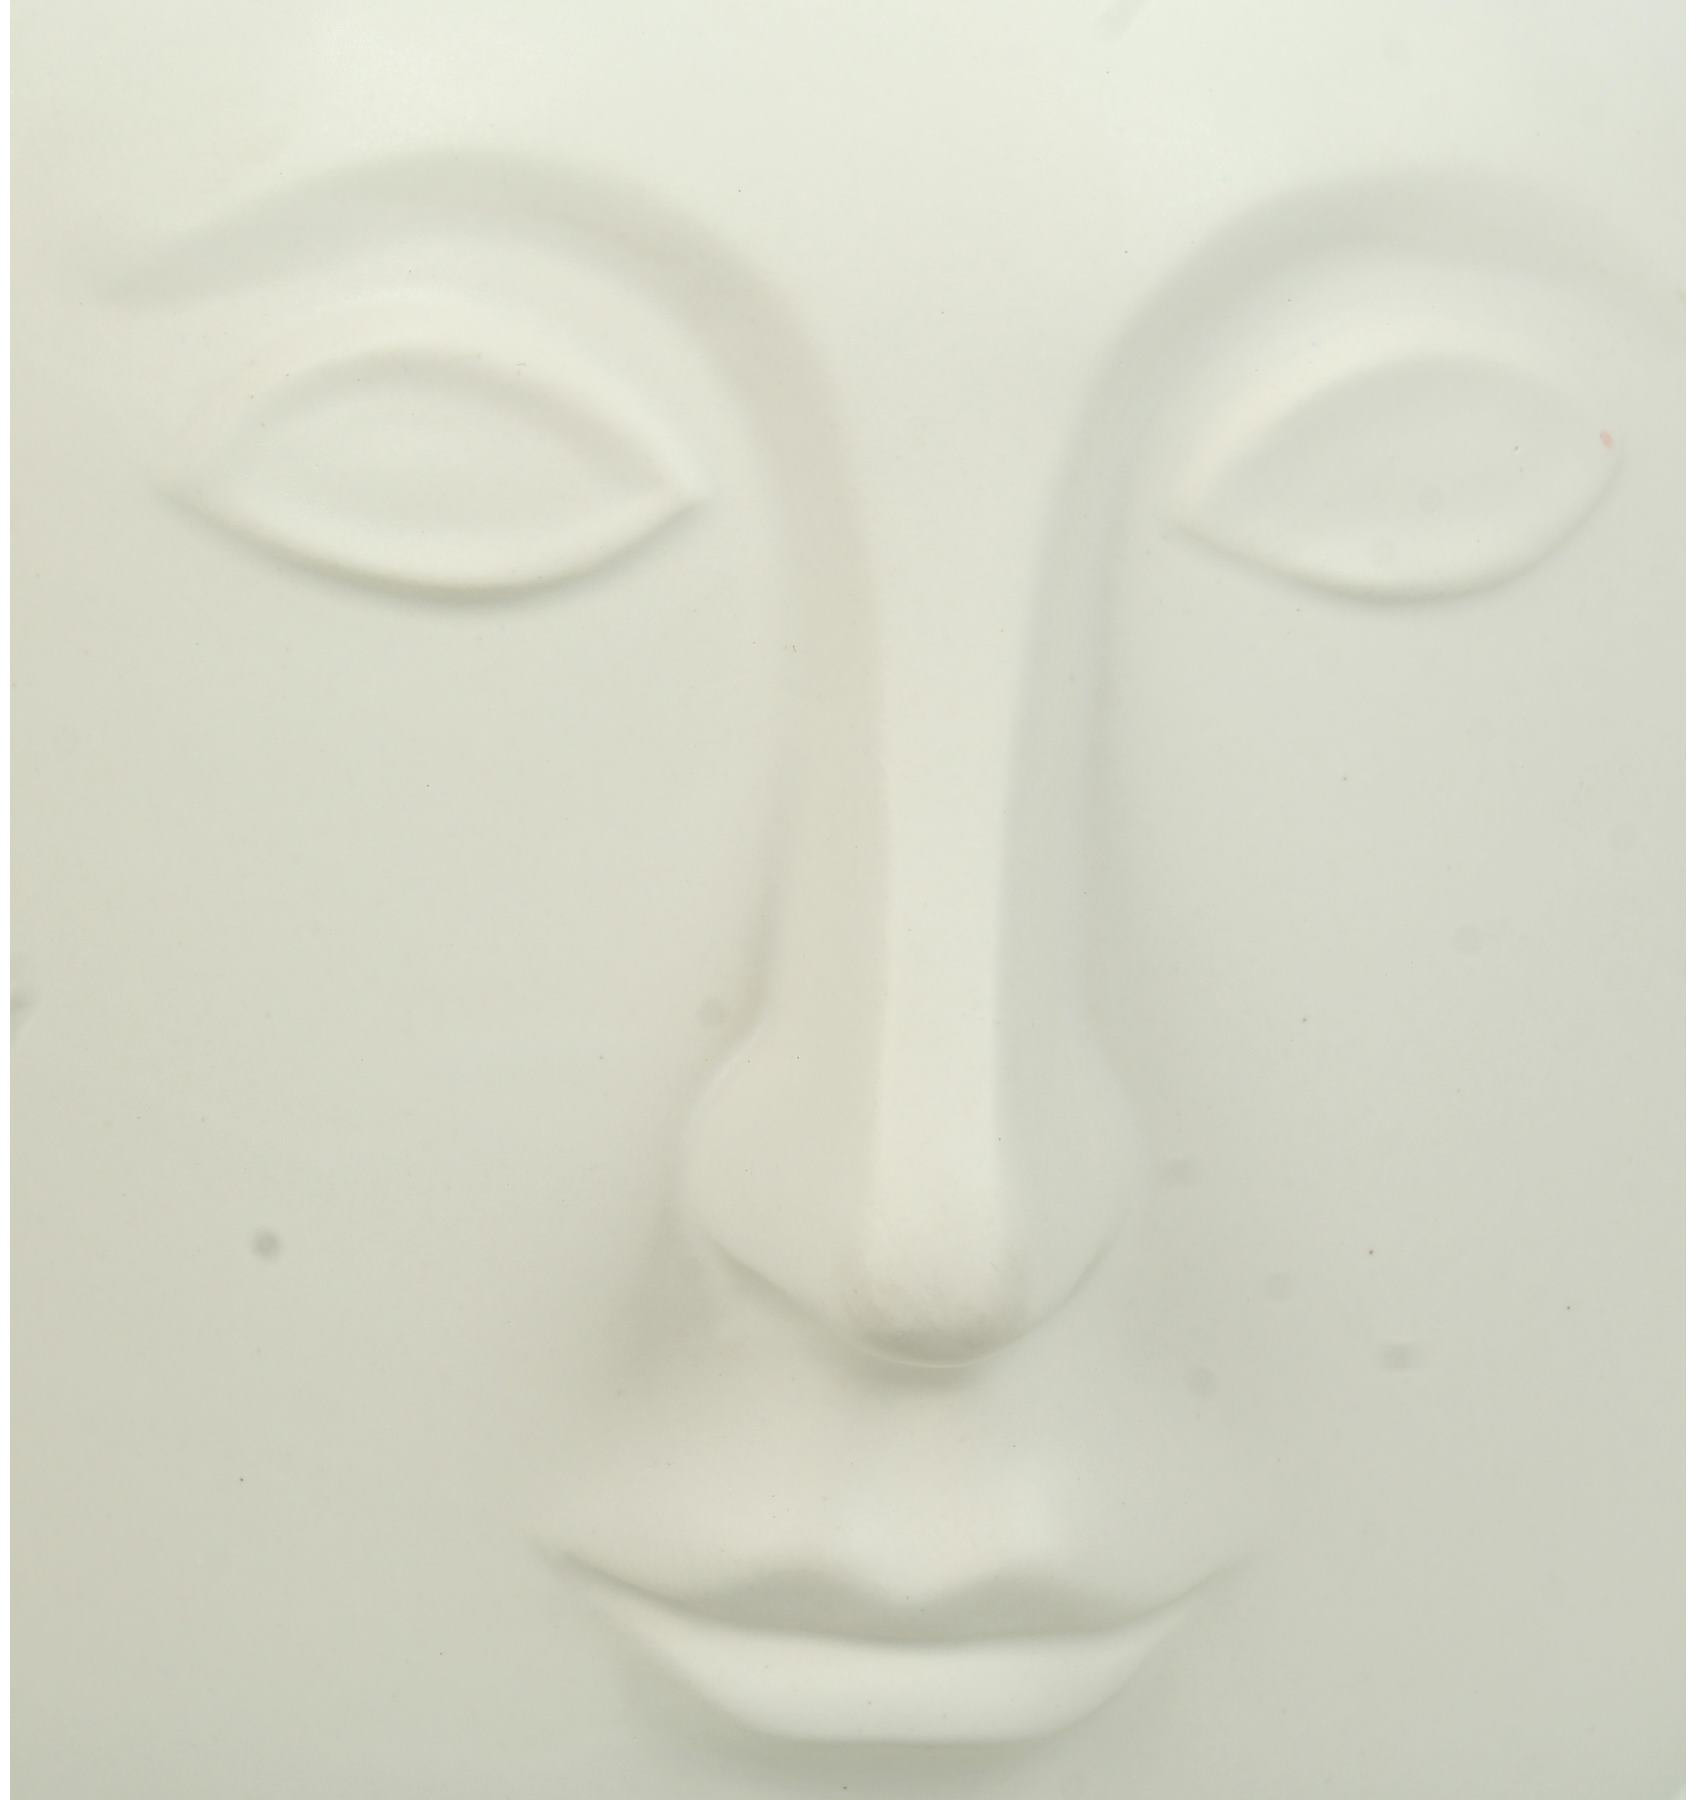 Vase White 19x16x18cm